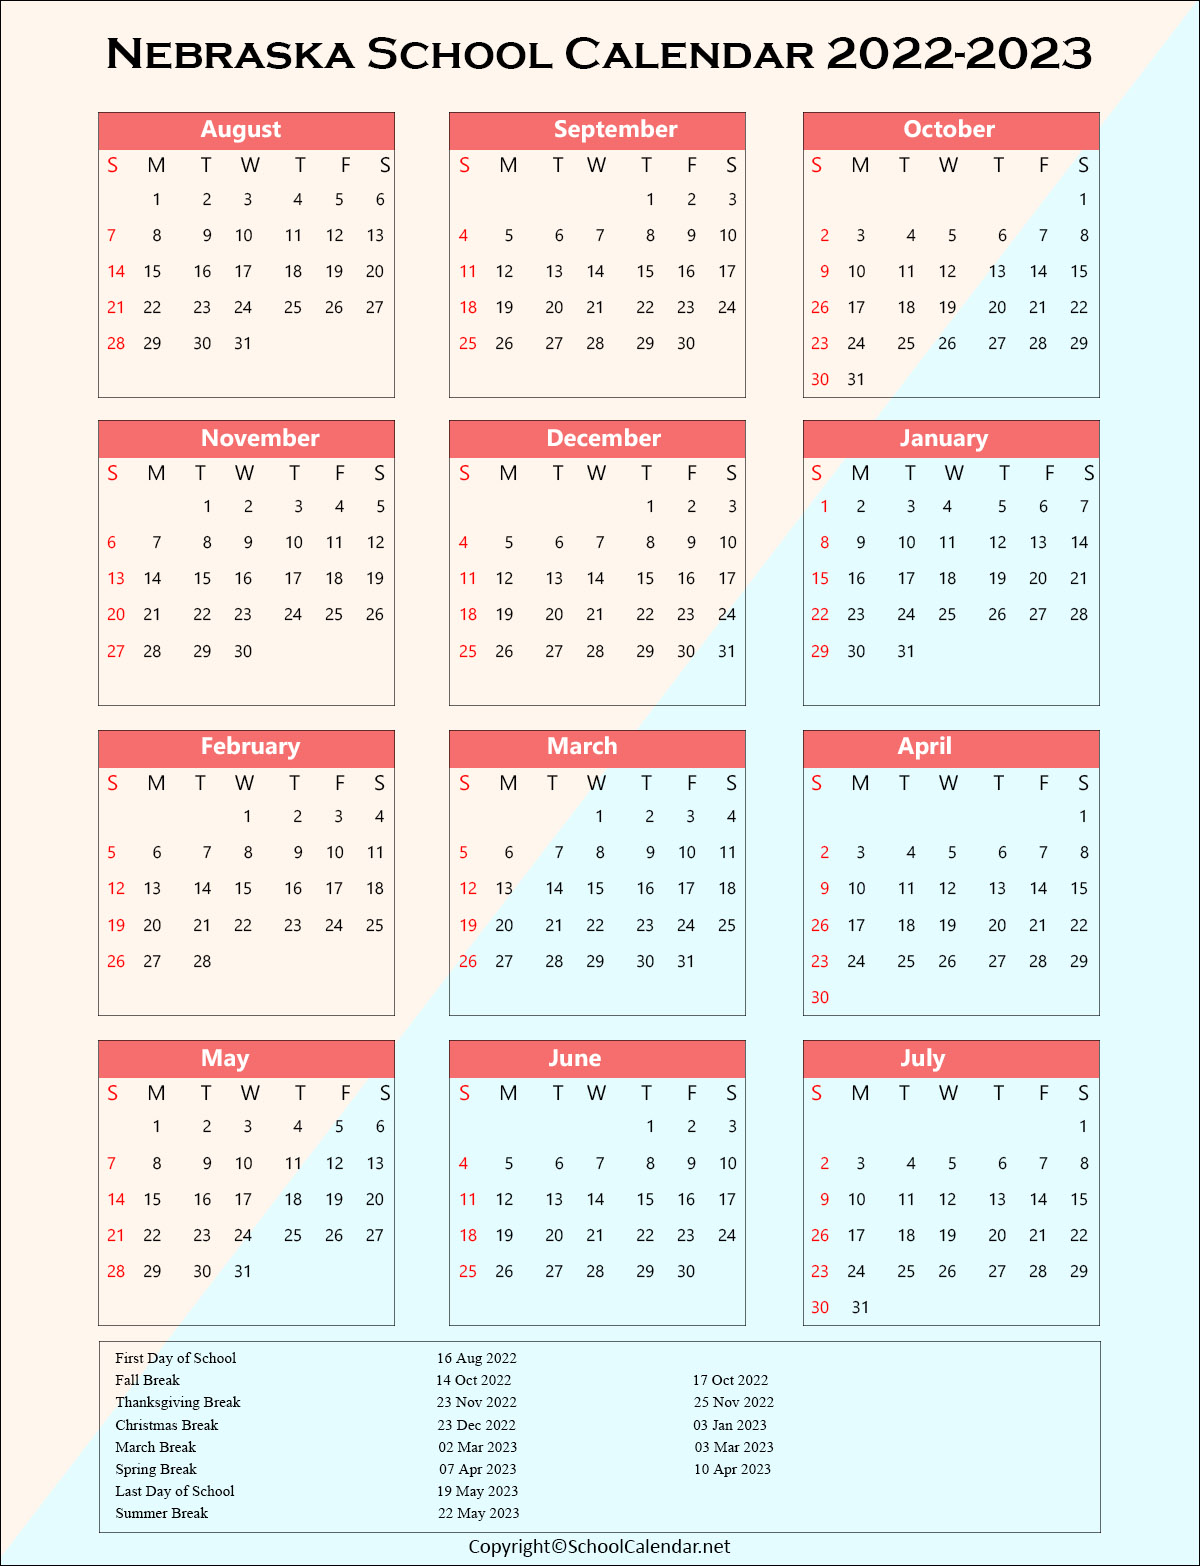 Nebraska School Holiday Calendar 2022